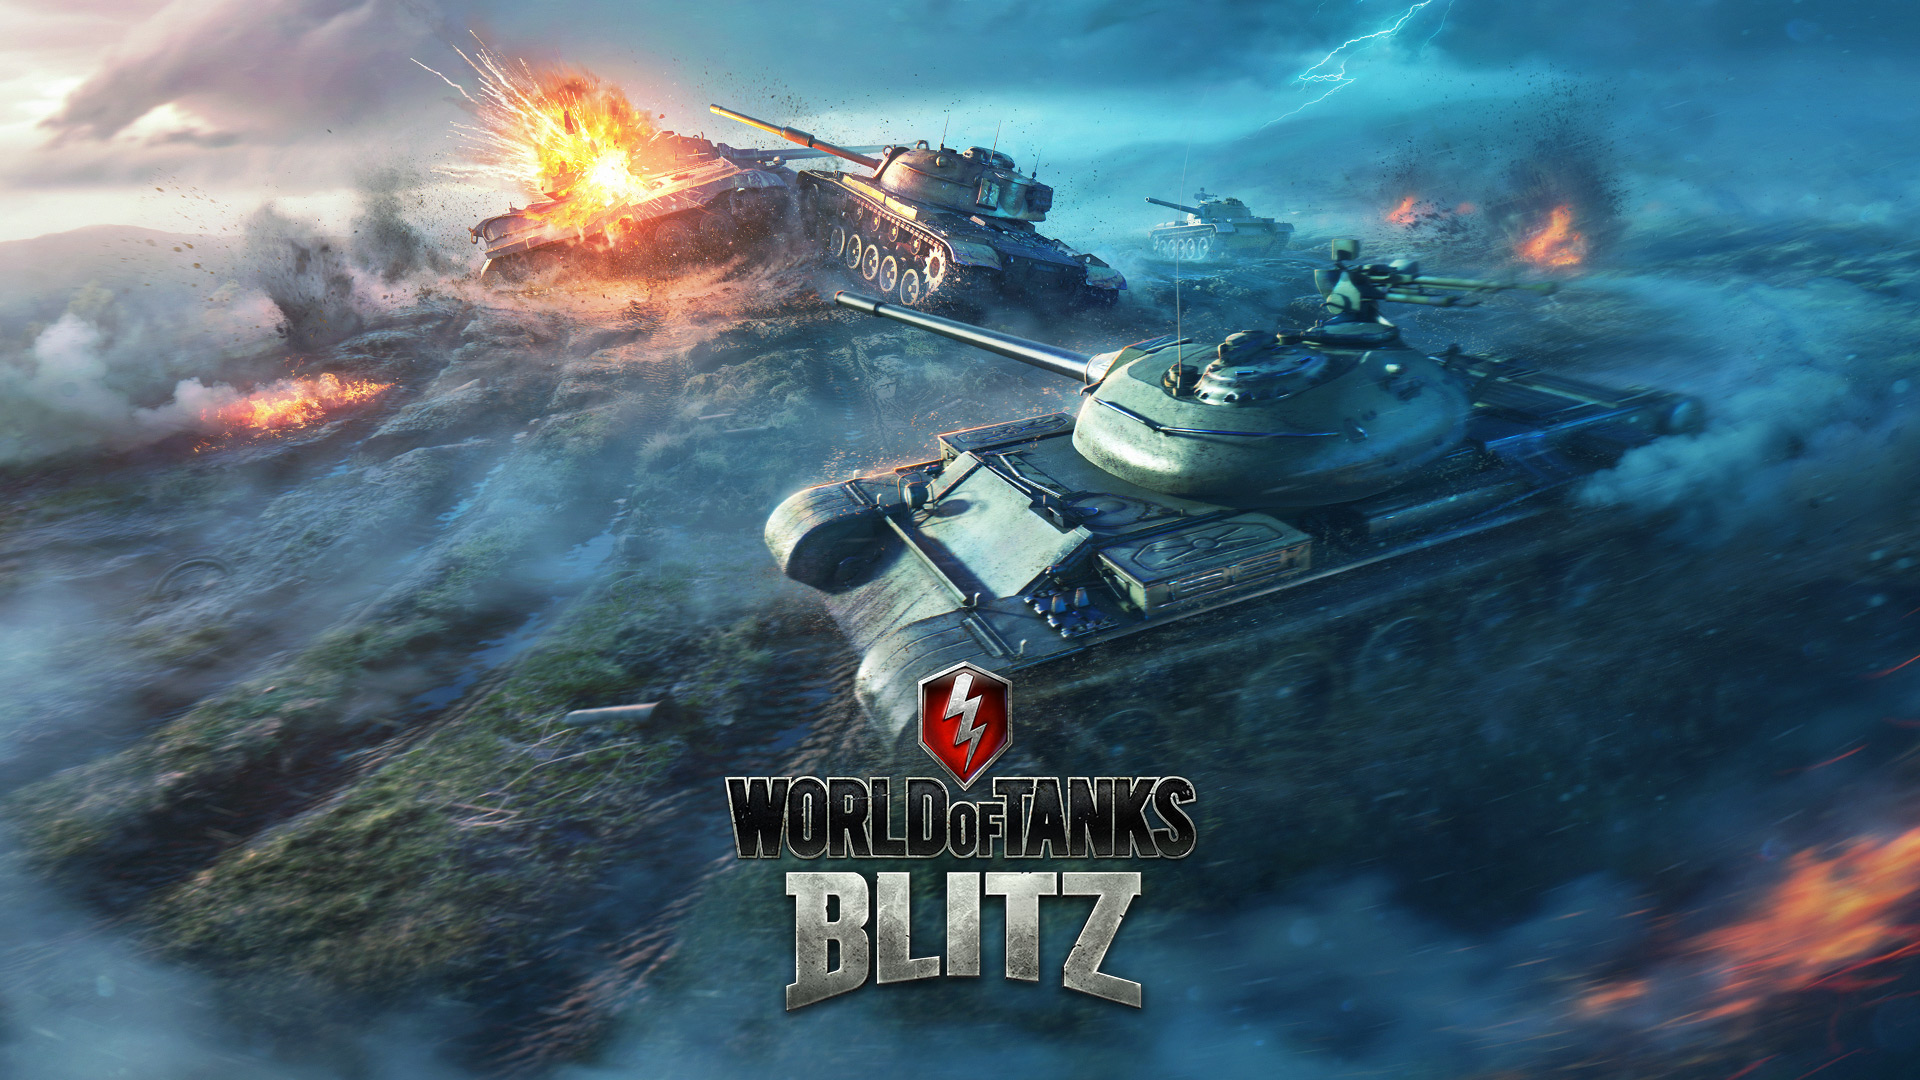 world of tanks blitz wallpaper